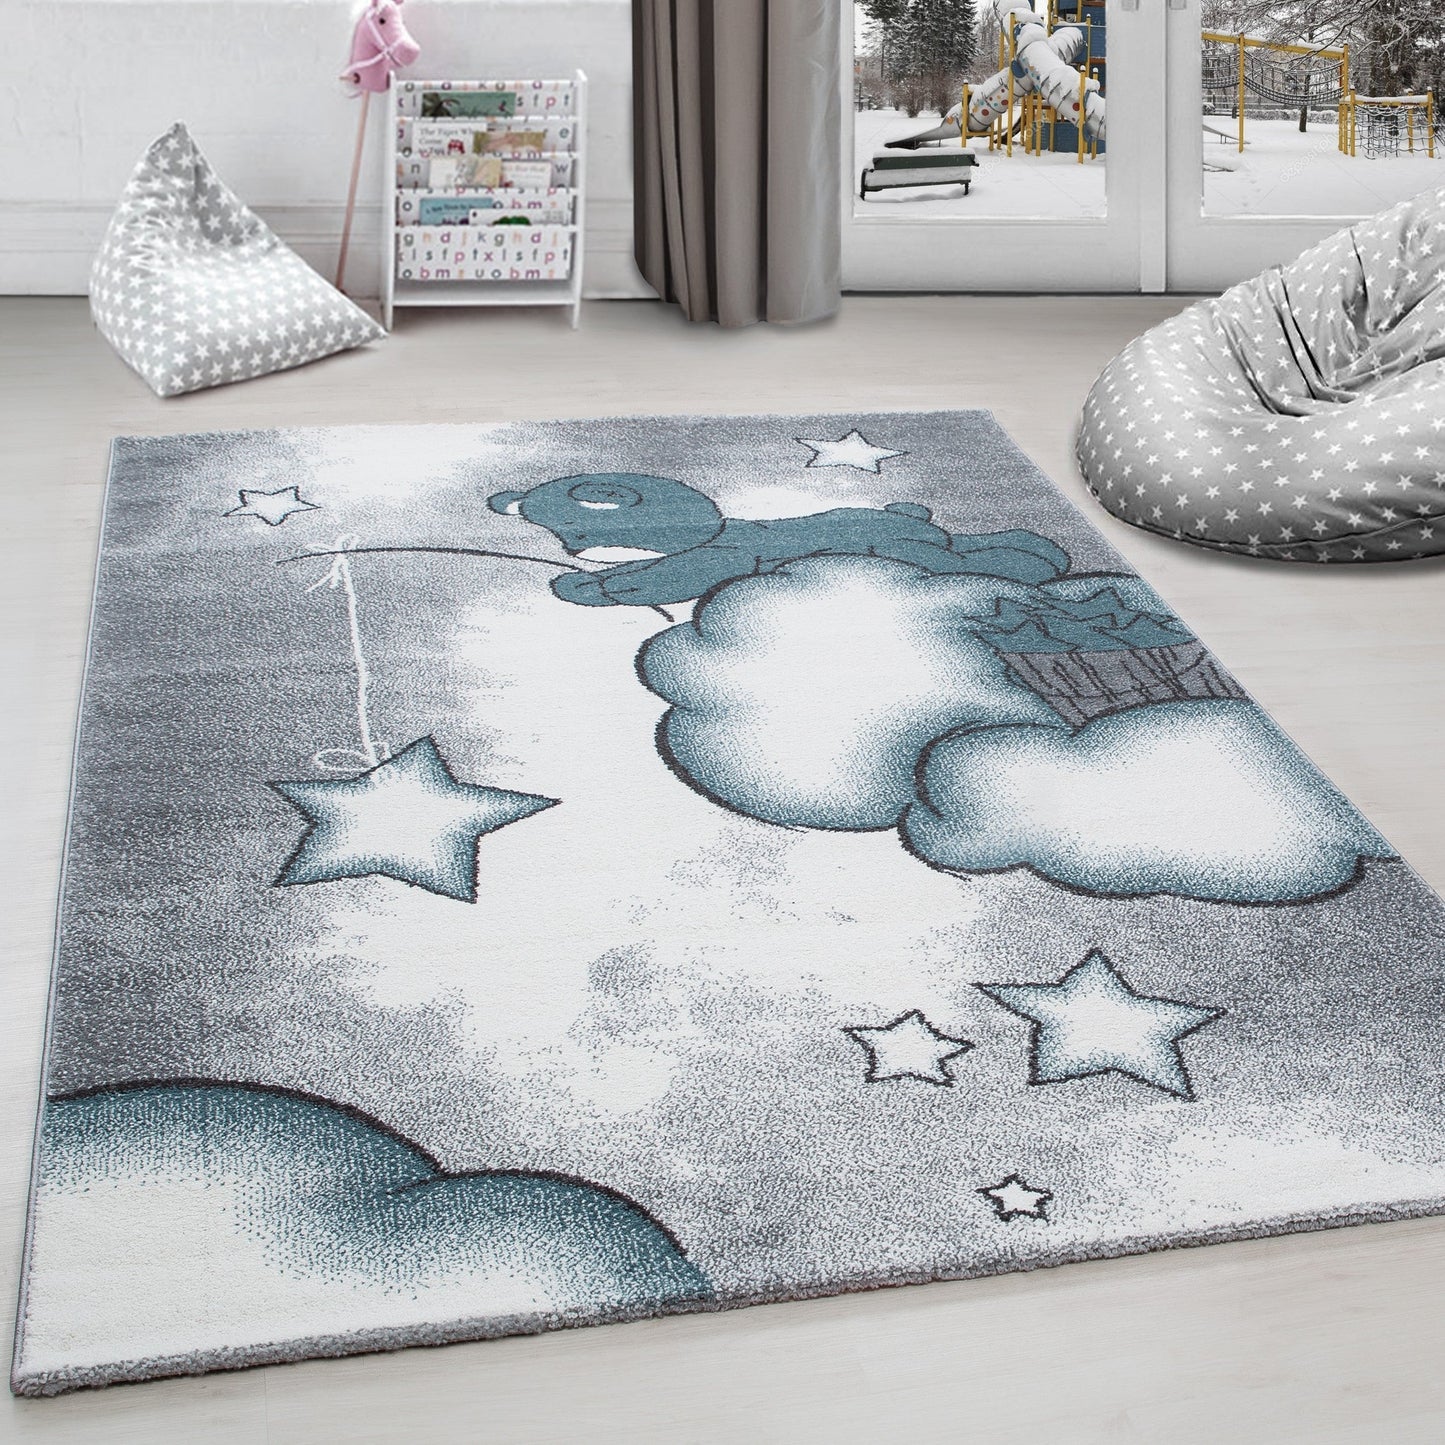 Kinderteppich Kinderzimmer Teppich Bär Wolken Stern-Angeln Grau-Weiß-Blau